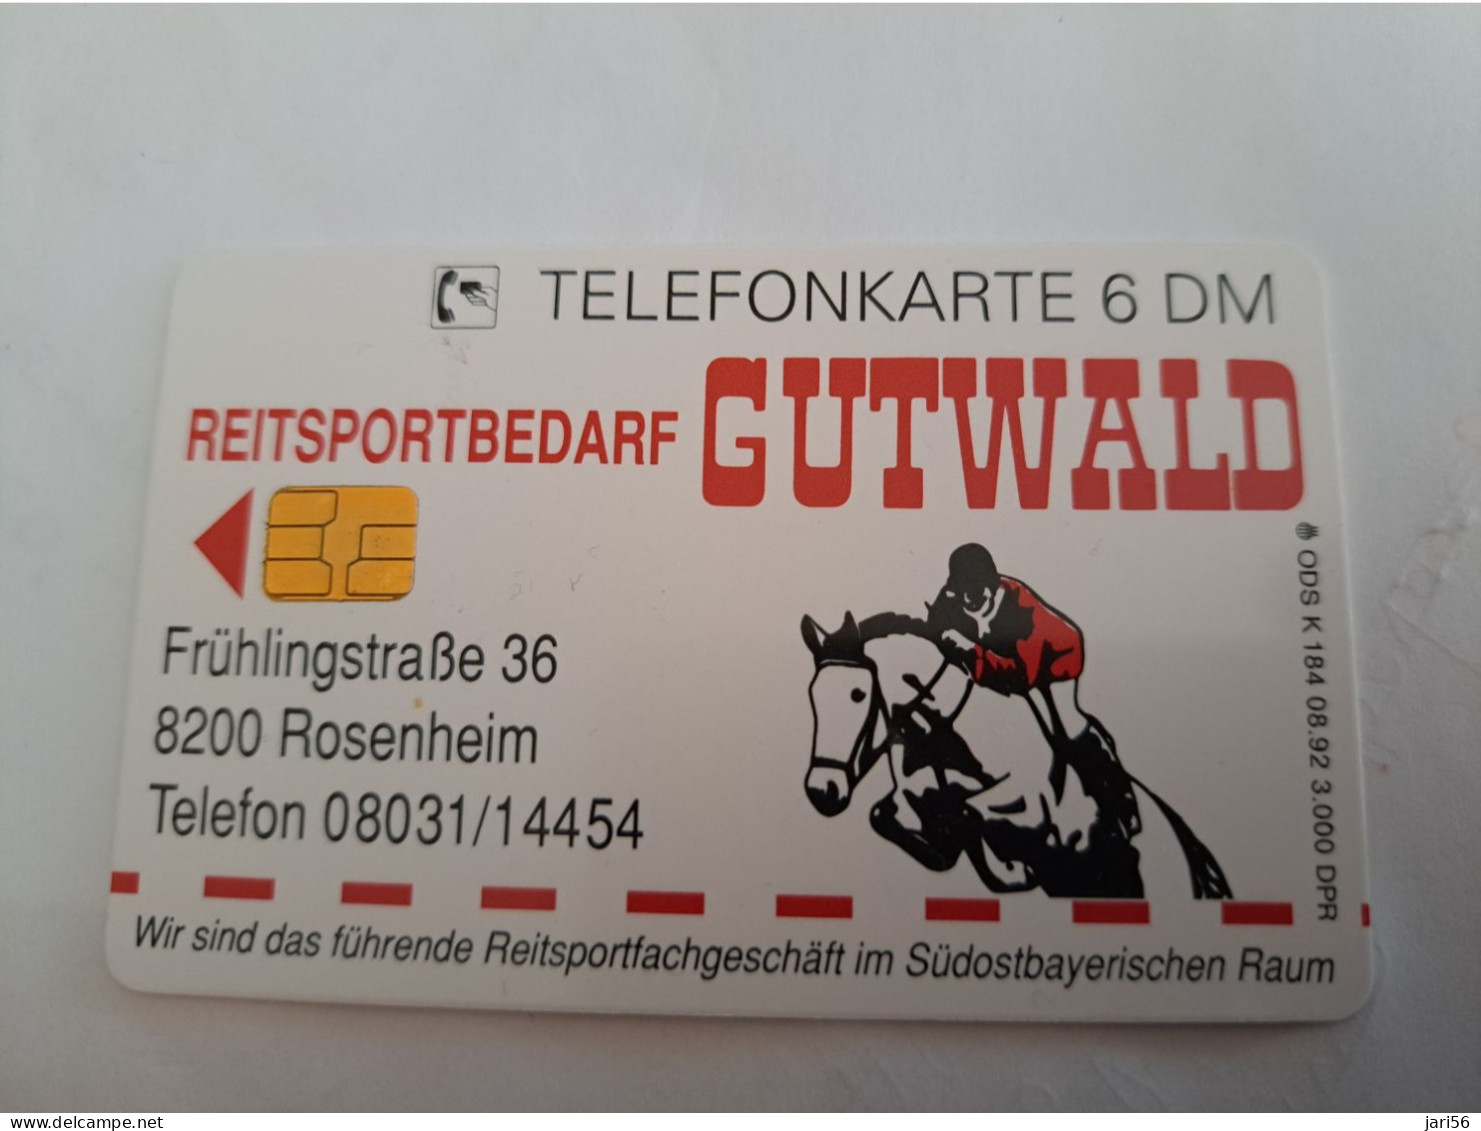 DUITSLAND/ GERMANY  CHIPCARD /GUTWALD HORSE/ REITERSPORT / 3000 EX   / 6 DM  CARD / K 184 MINT  CARD     **14163** - S-Series: Schalterserie Mit Fremdfirmenreklame